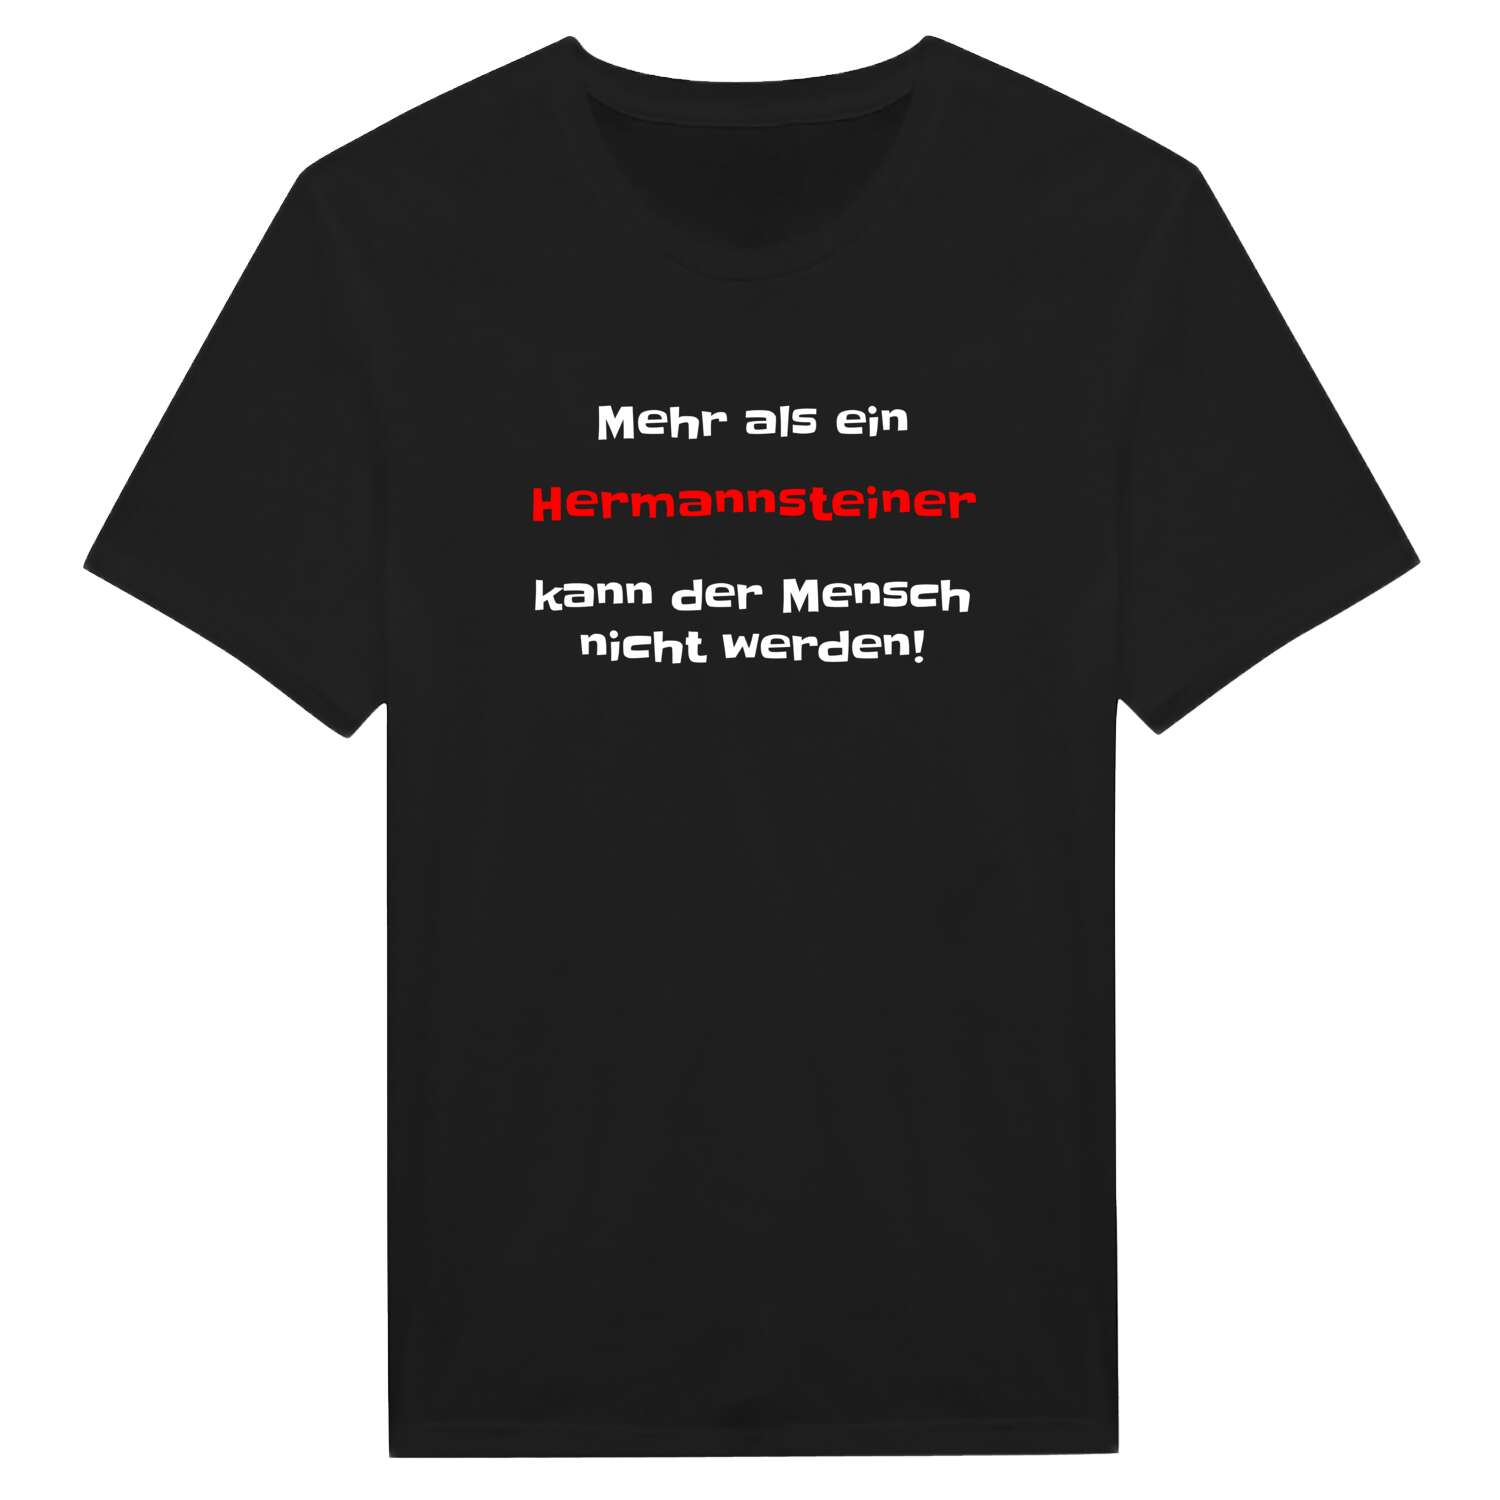 Hermannstein T-Shirt »Mehr als ein«